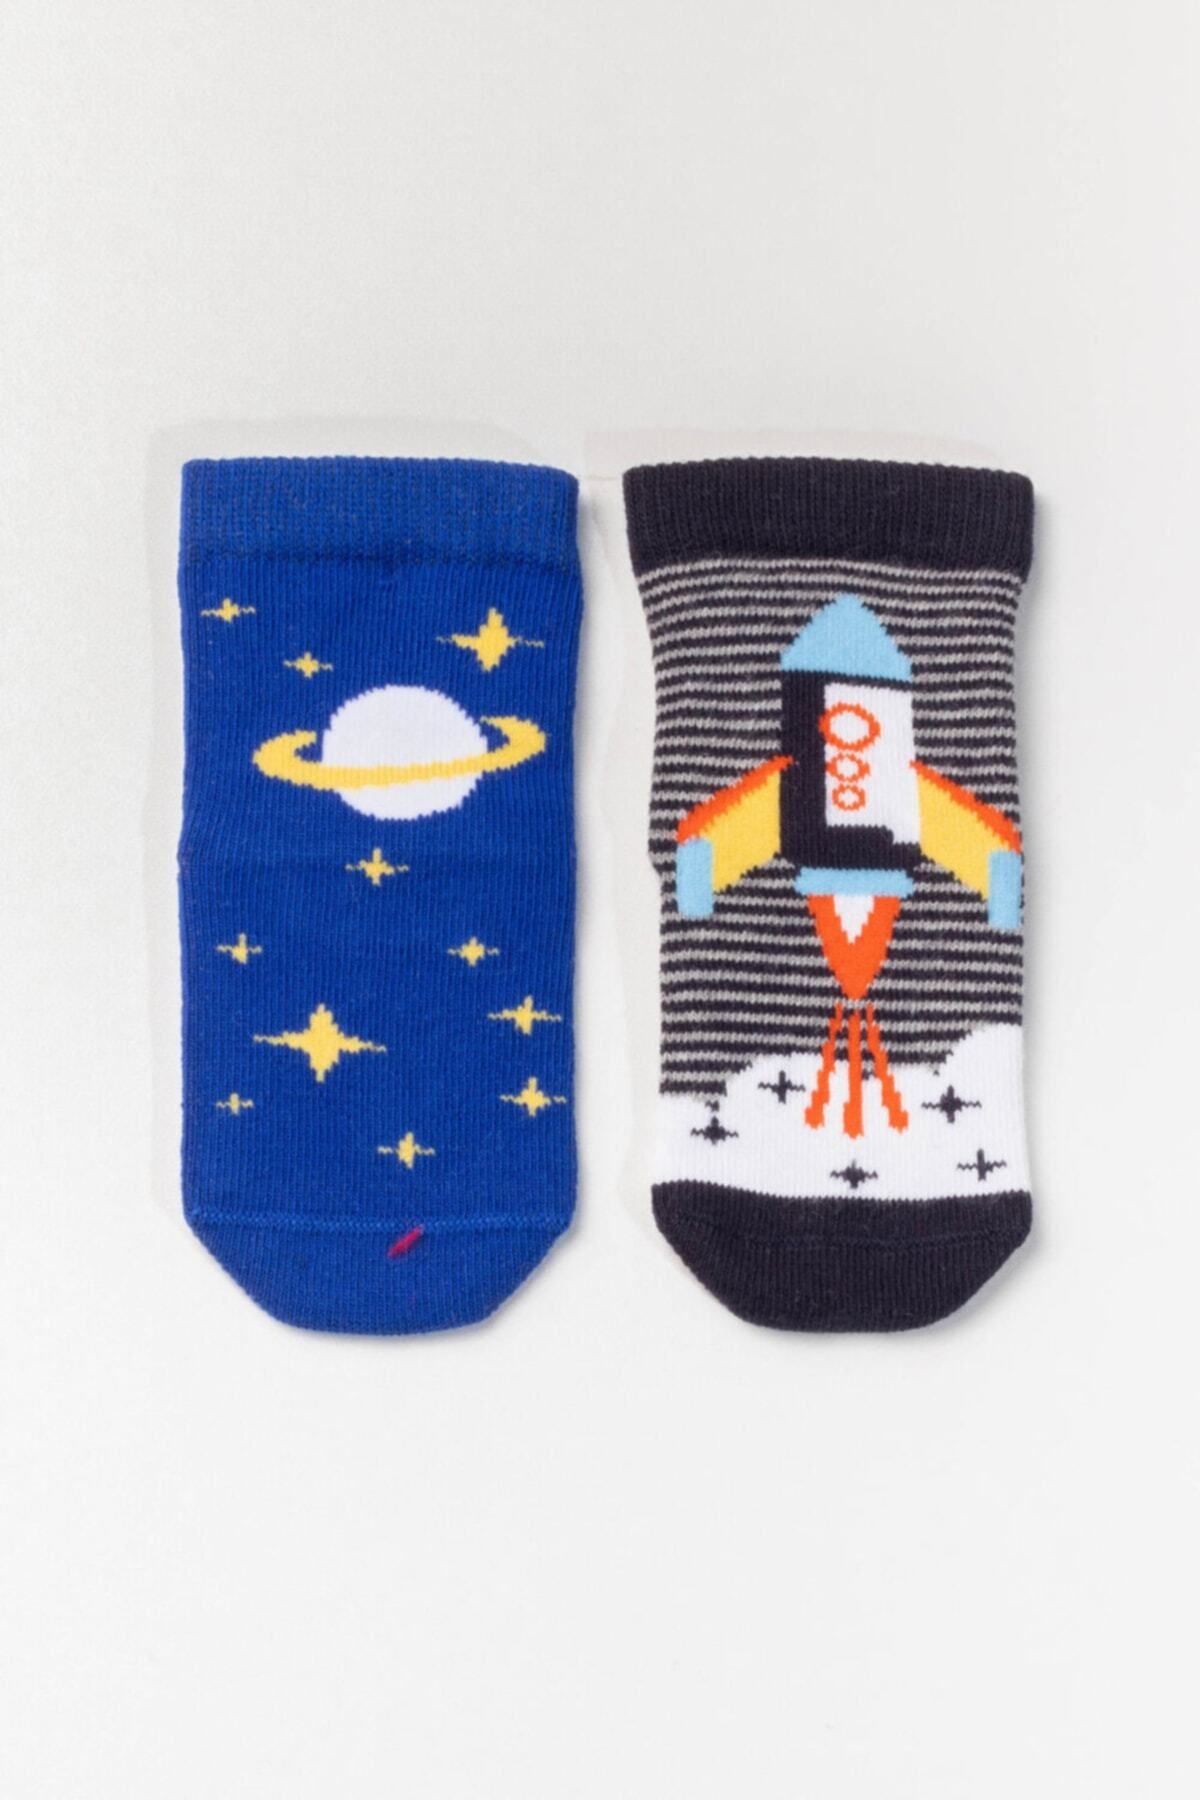 Katia & Bony Bebek Roket Desenli Çorap - Siyah / Lacivert 2'li Paket